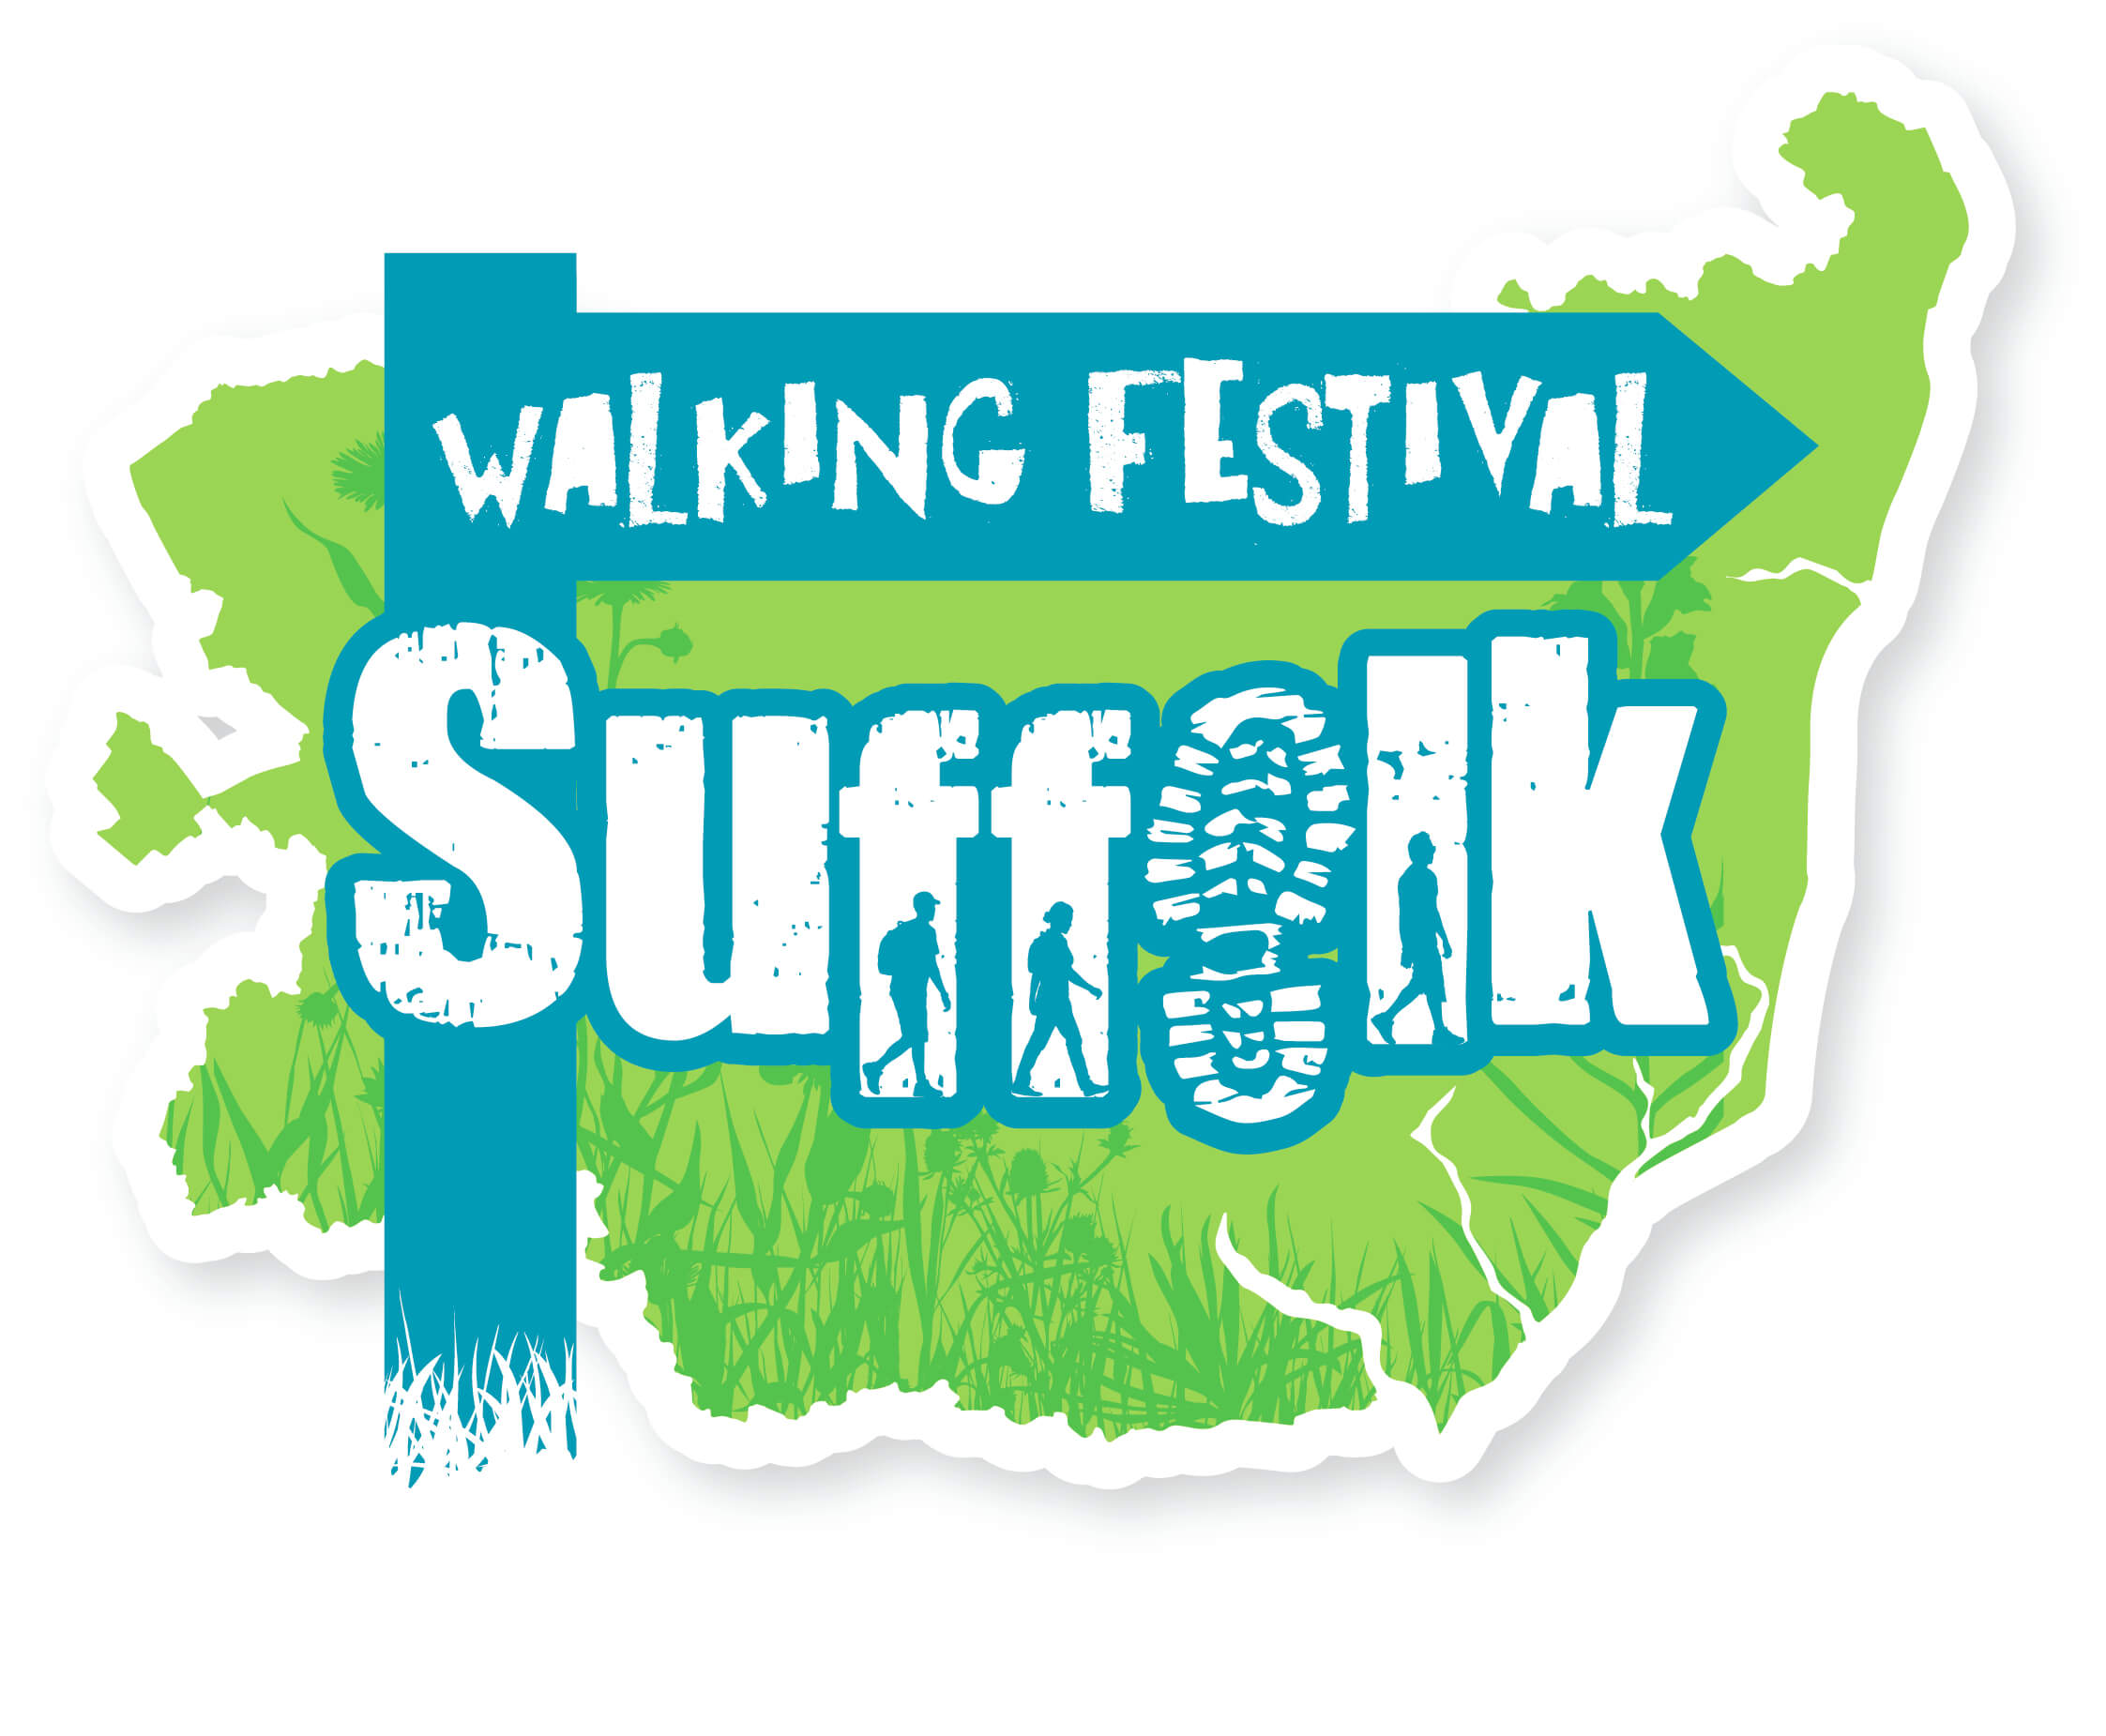 Suffolk's Walking Festival